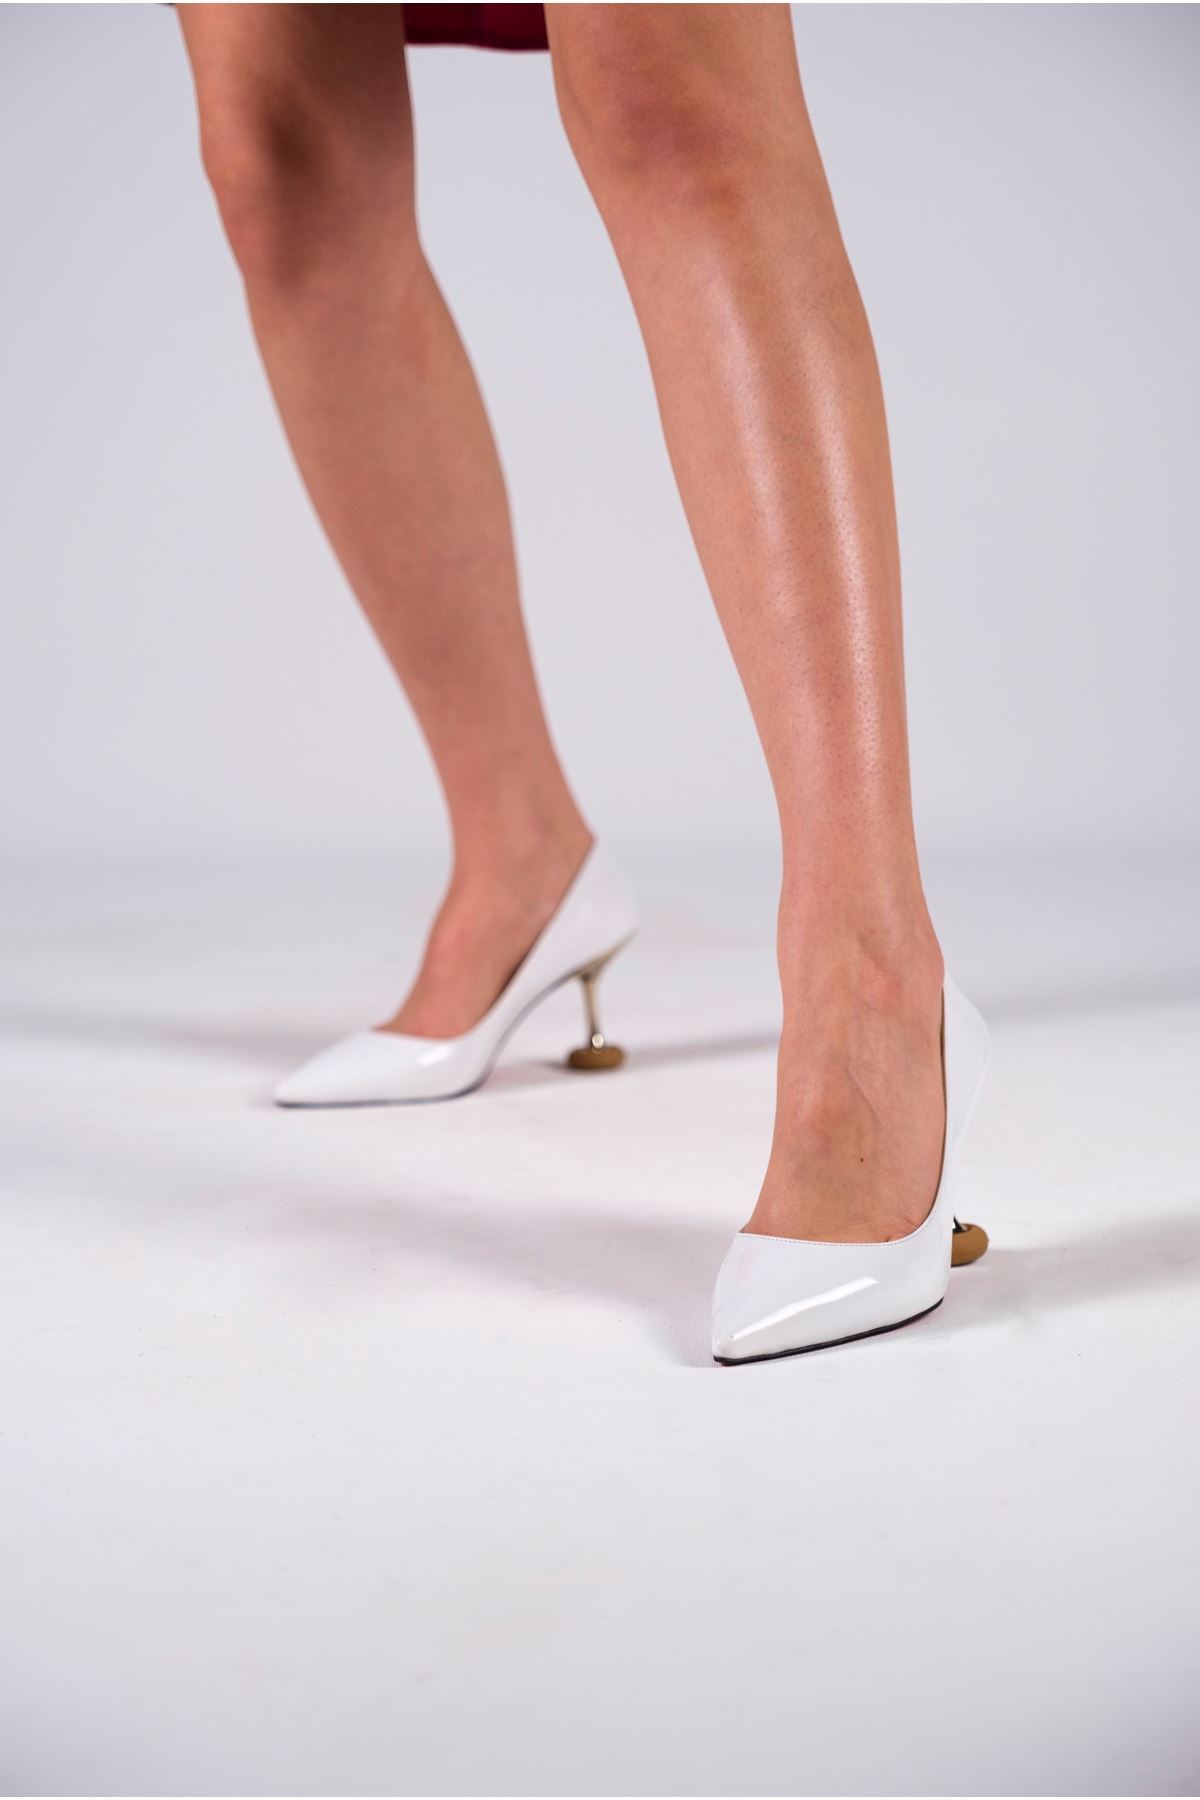 Beyaz Rugan Kadın Özel Tasarım Topuklu Ayakkabı Stiletto Renate